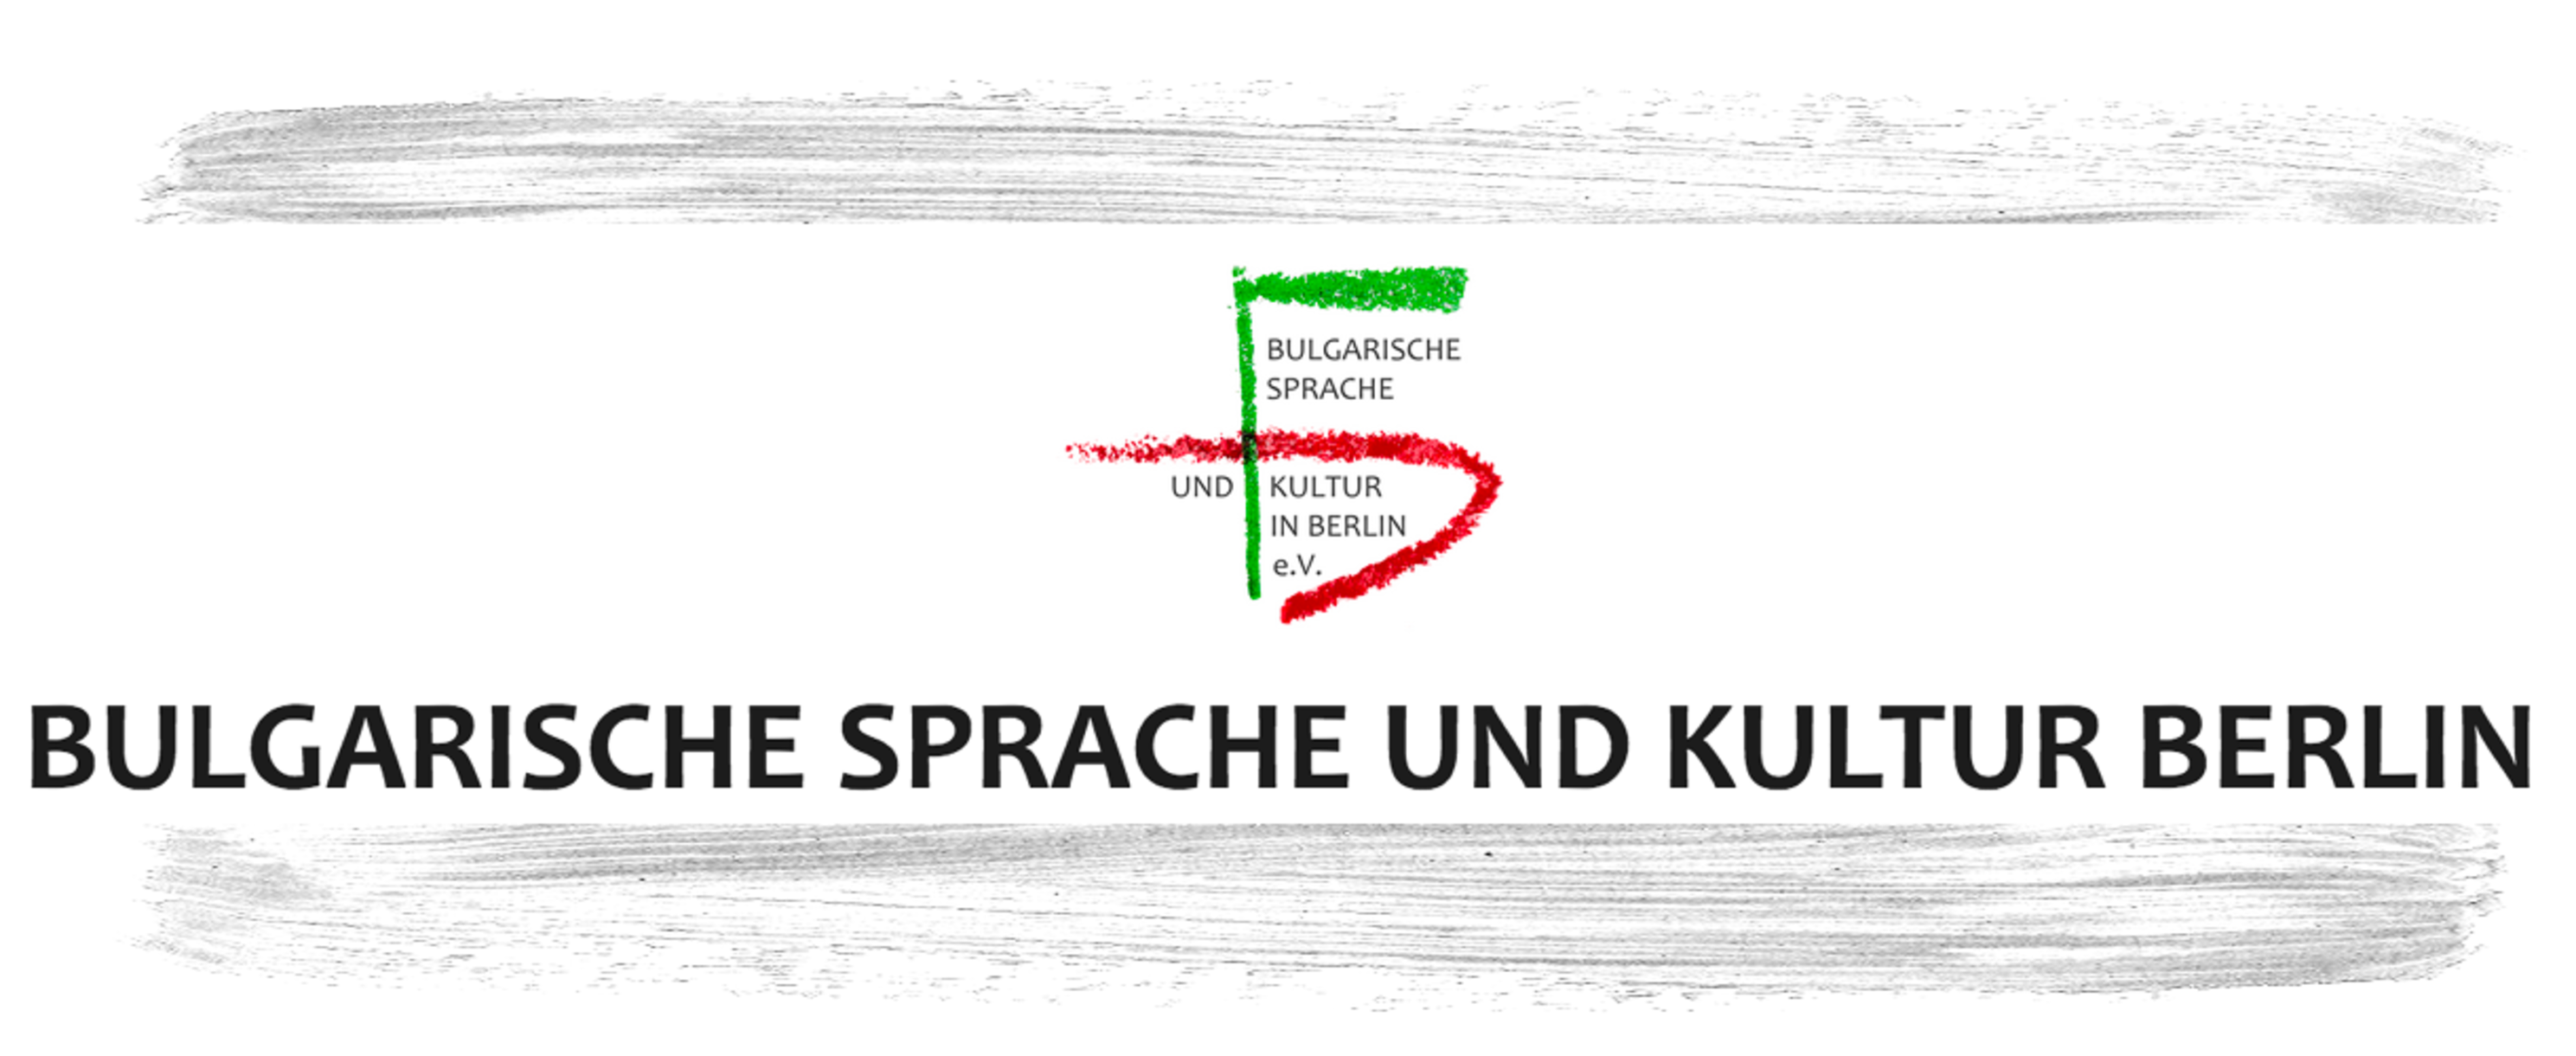 Bulgarische Sprache und Kultur in Berlin e.V.